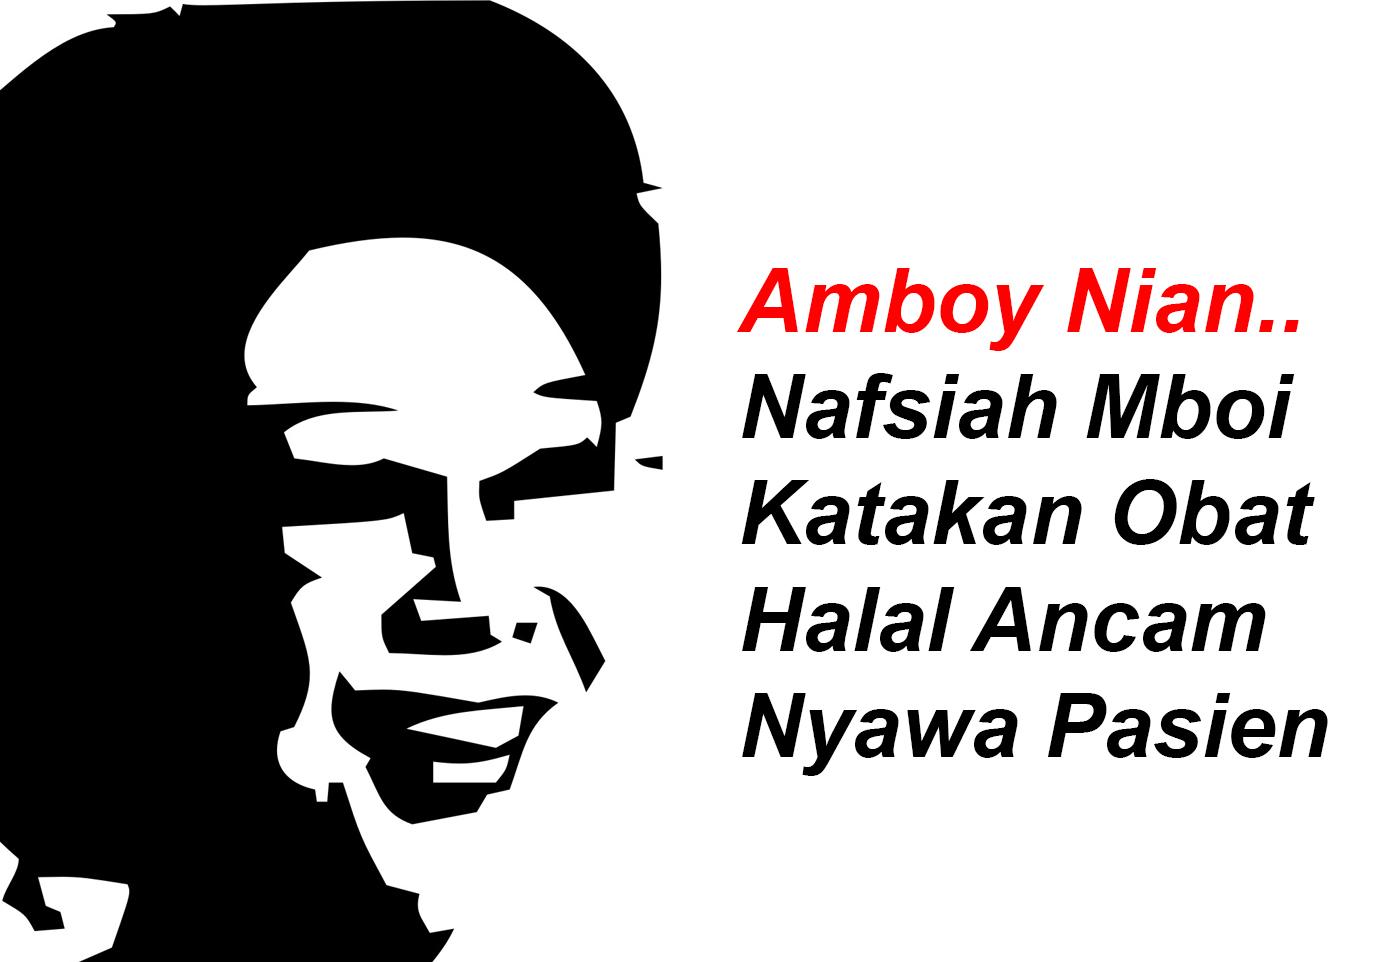 Amboy Nian, Nafsiah Mboi Katakan Obat Halal Ancam Nyawa Pasien 